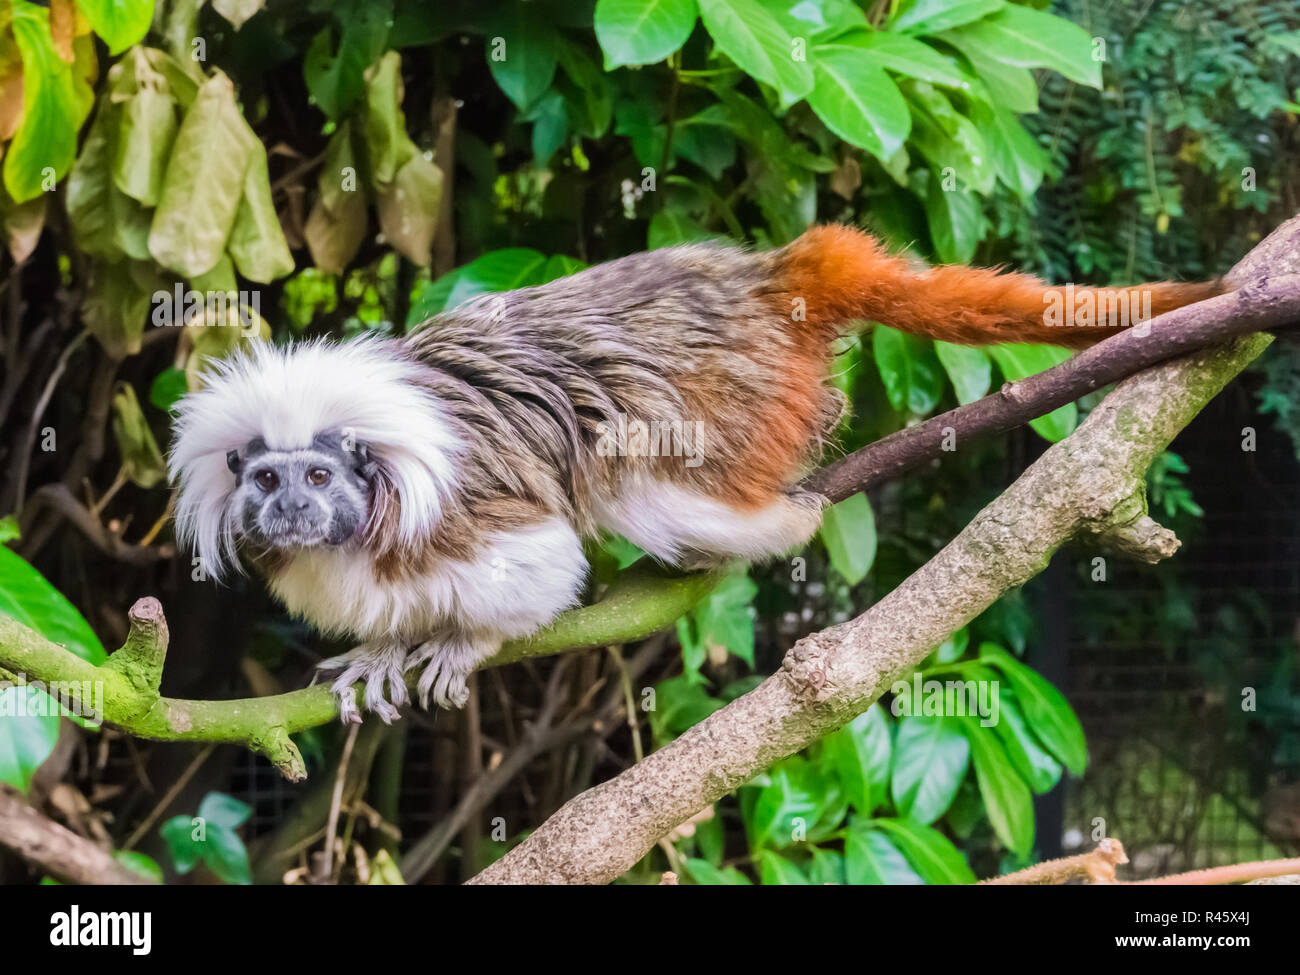 Tête de singe tamarin coton marcher sur une branche d'une espèce rare et en danger critique espèce d'animaux exotiques en provenance de Colombie Banque D'Images